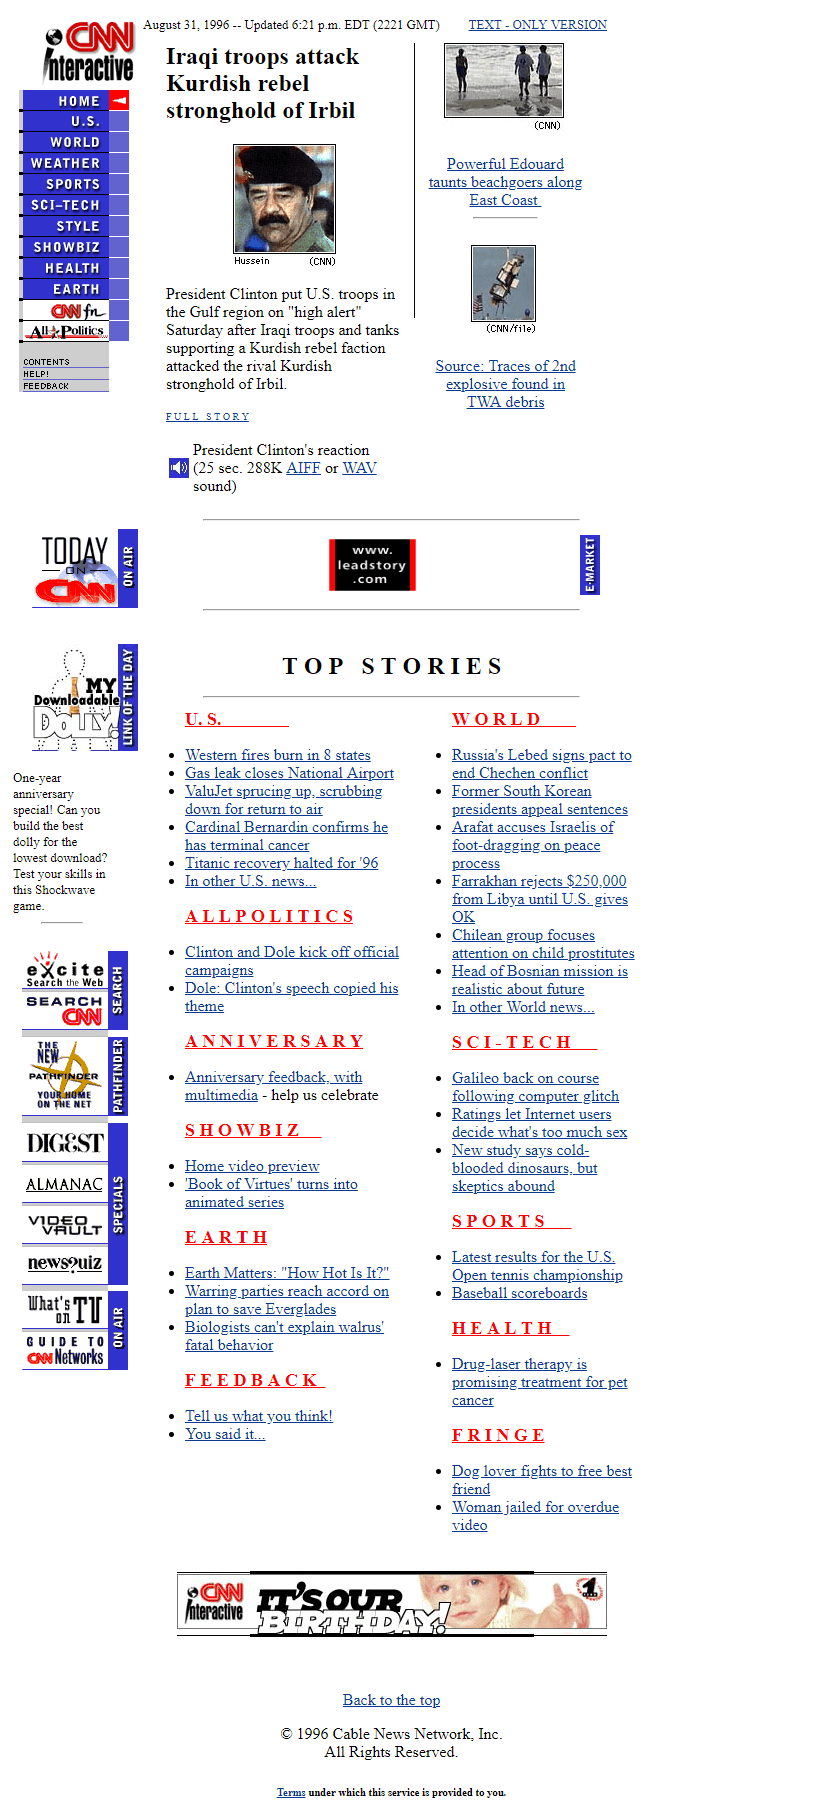 CNN.com website in 1996